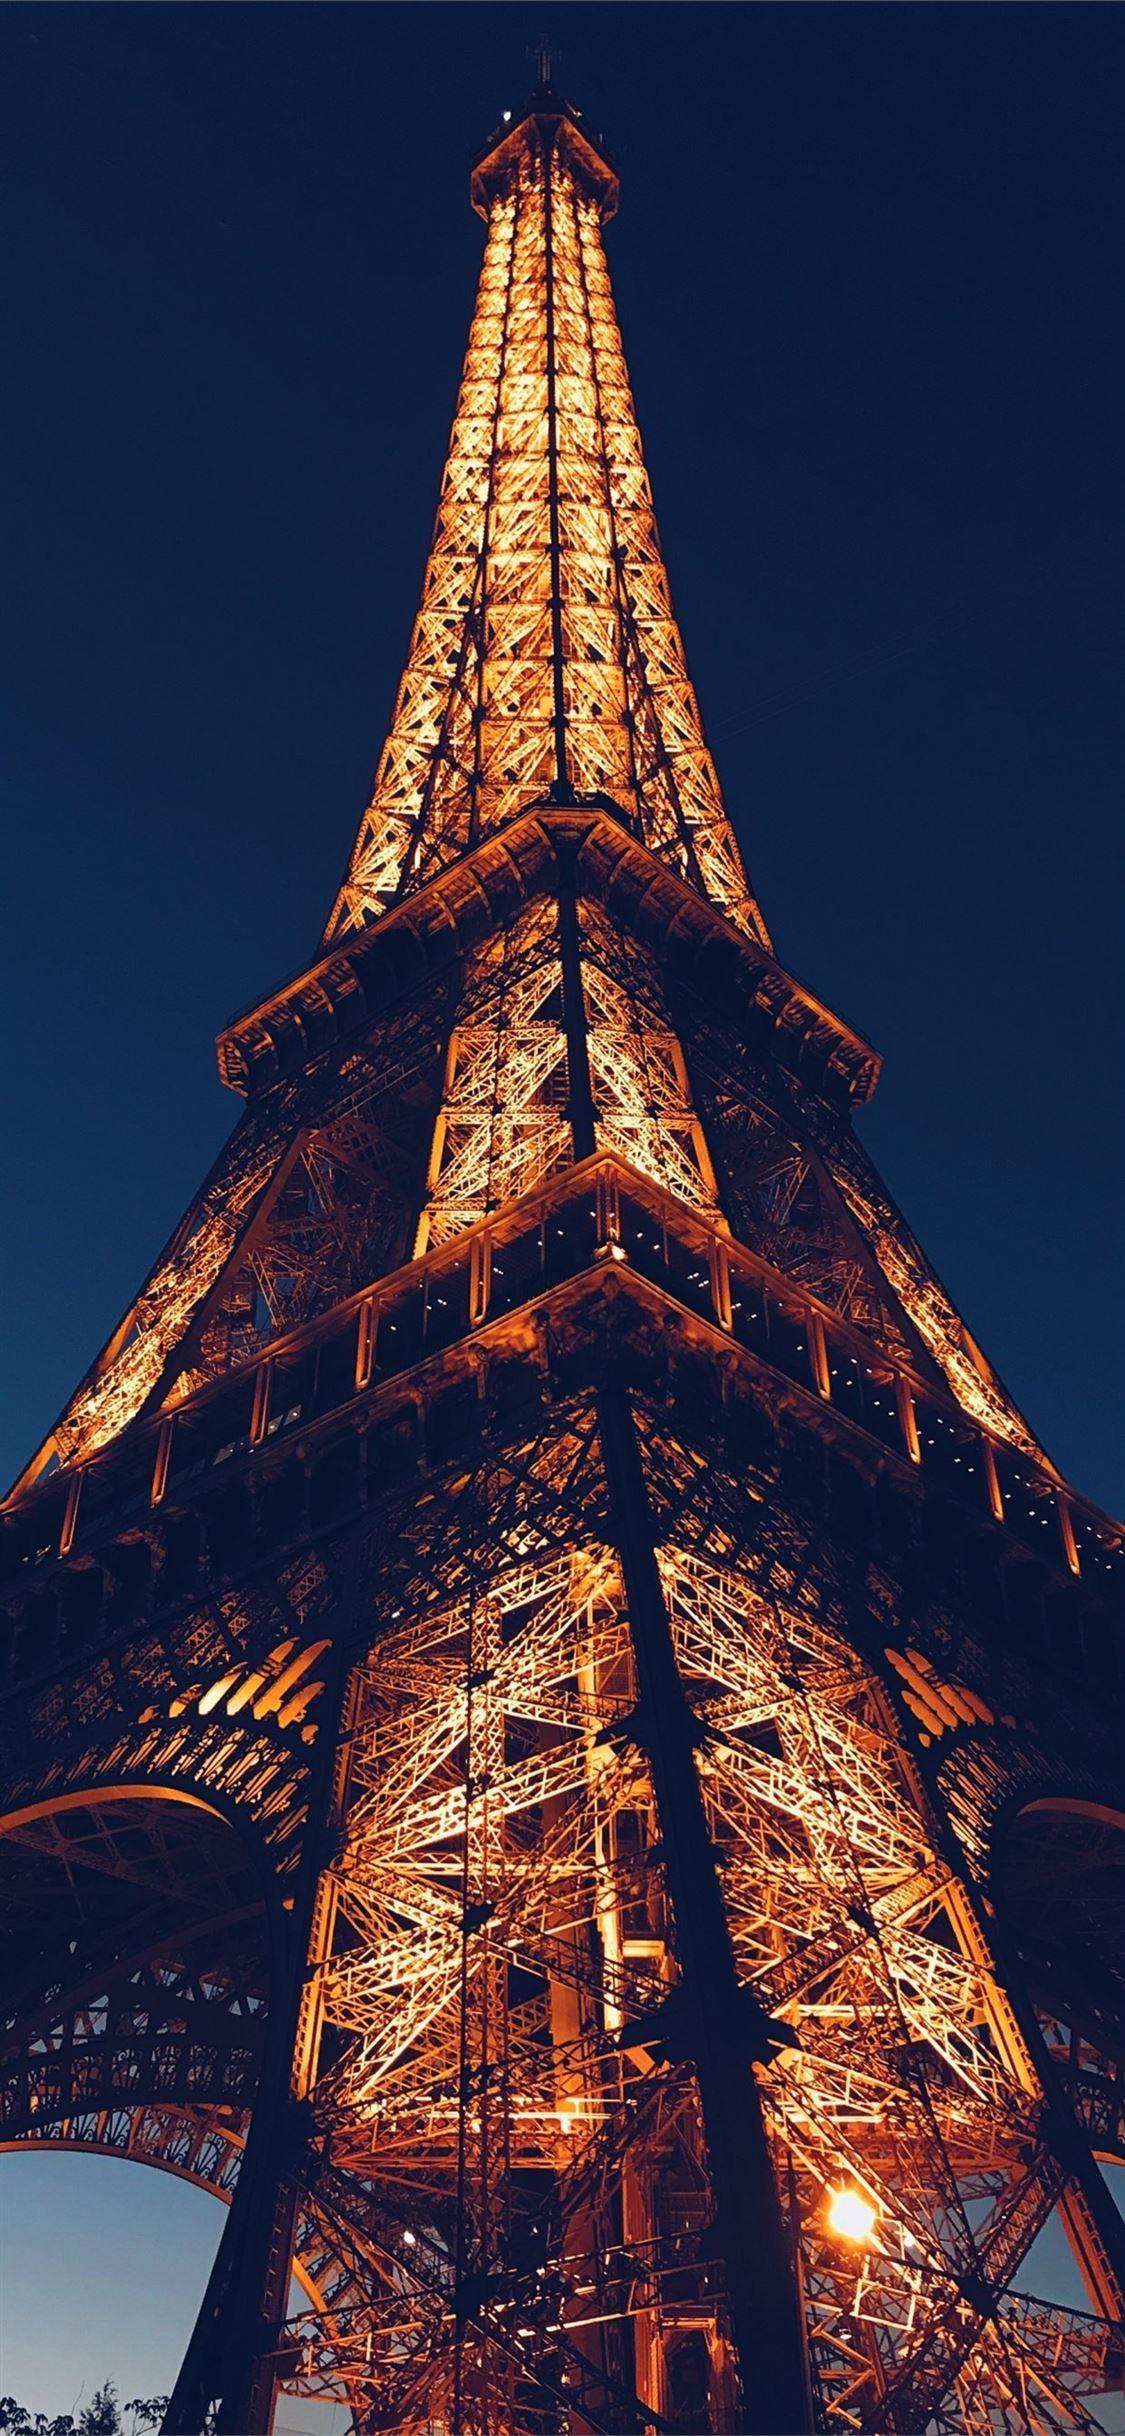 Tổng Hợp 50 Hình Ảnh Tháp Eiffel Đẹp Lộng Lấy Hùng Vĩ Nhất